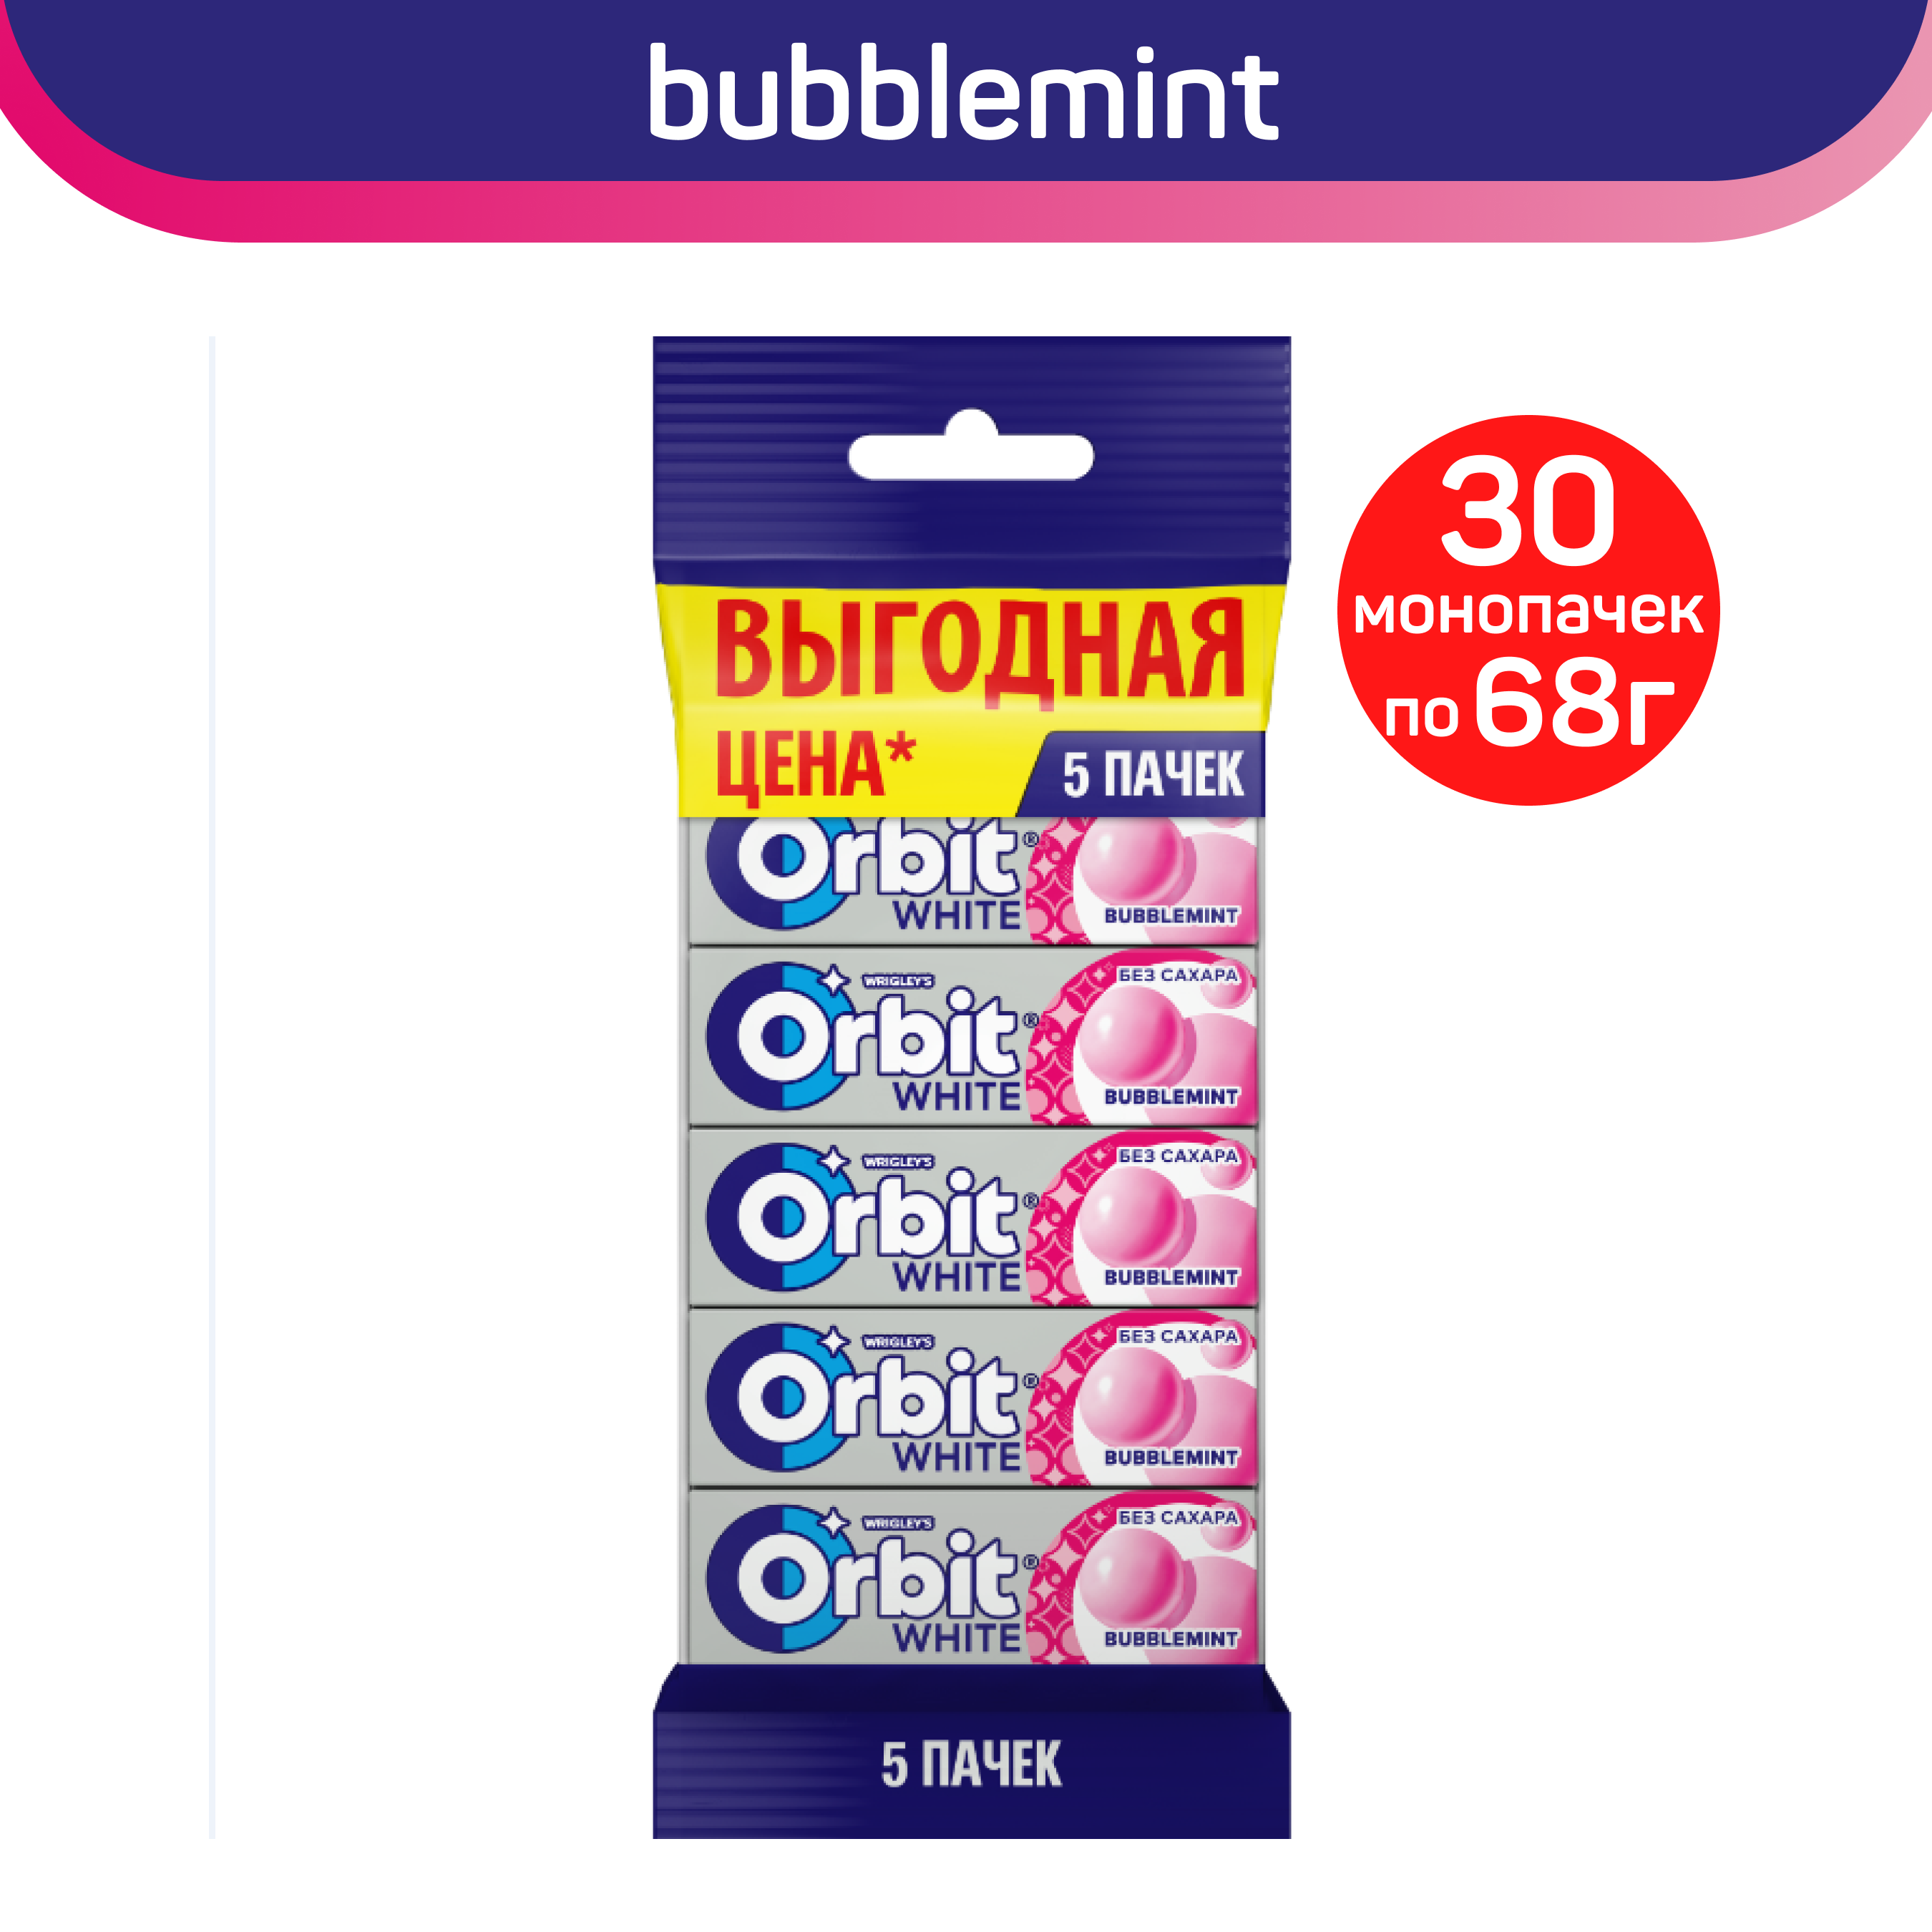 Жевательная резинка Orbit White Bubblemint без сахара, 30 упаковок по 5 шт